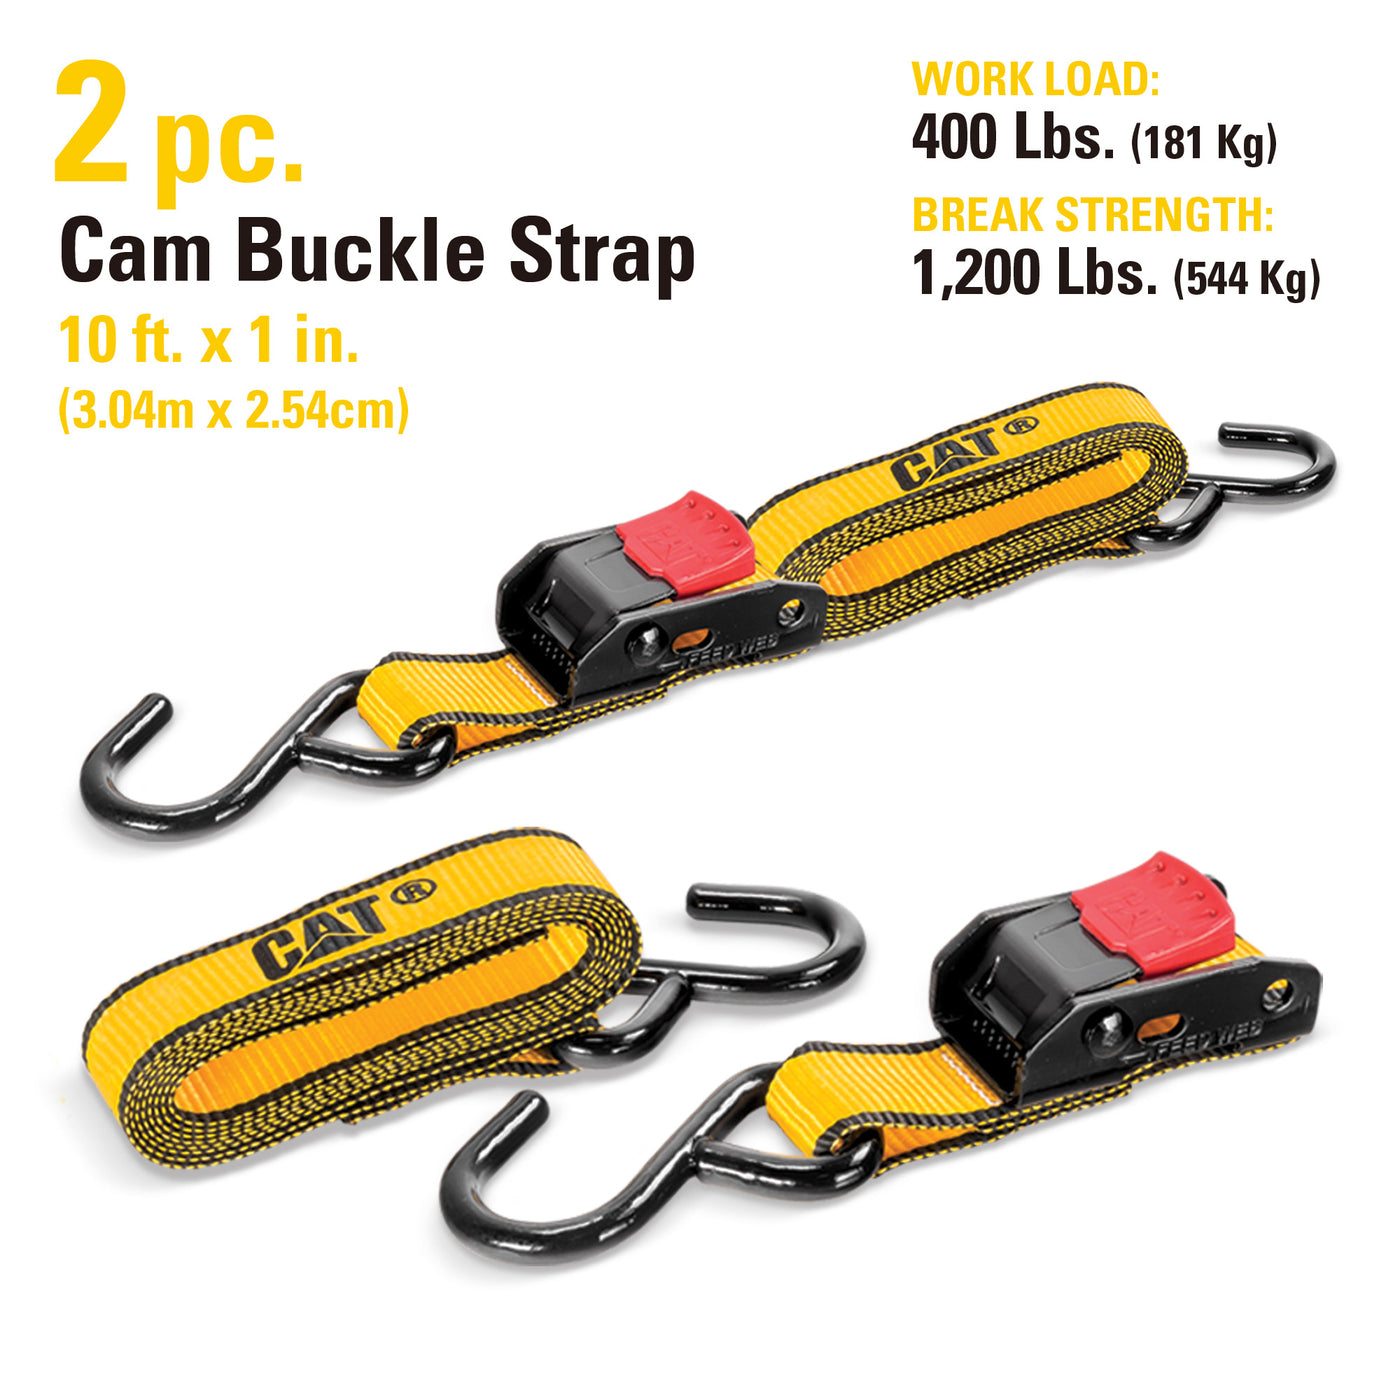 2 Piece 10 Ft. Cam Buckle Tie-Down Straps - 400 Lb.